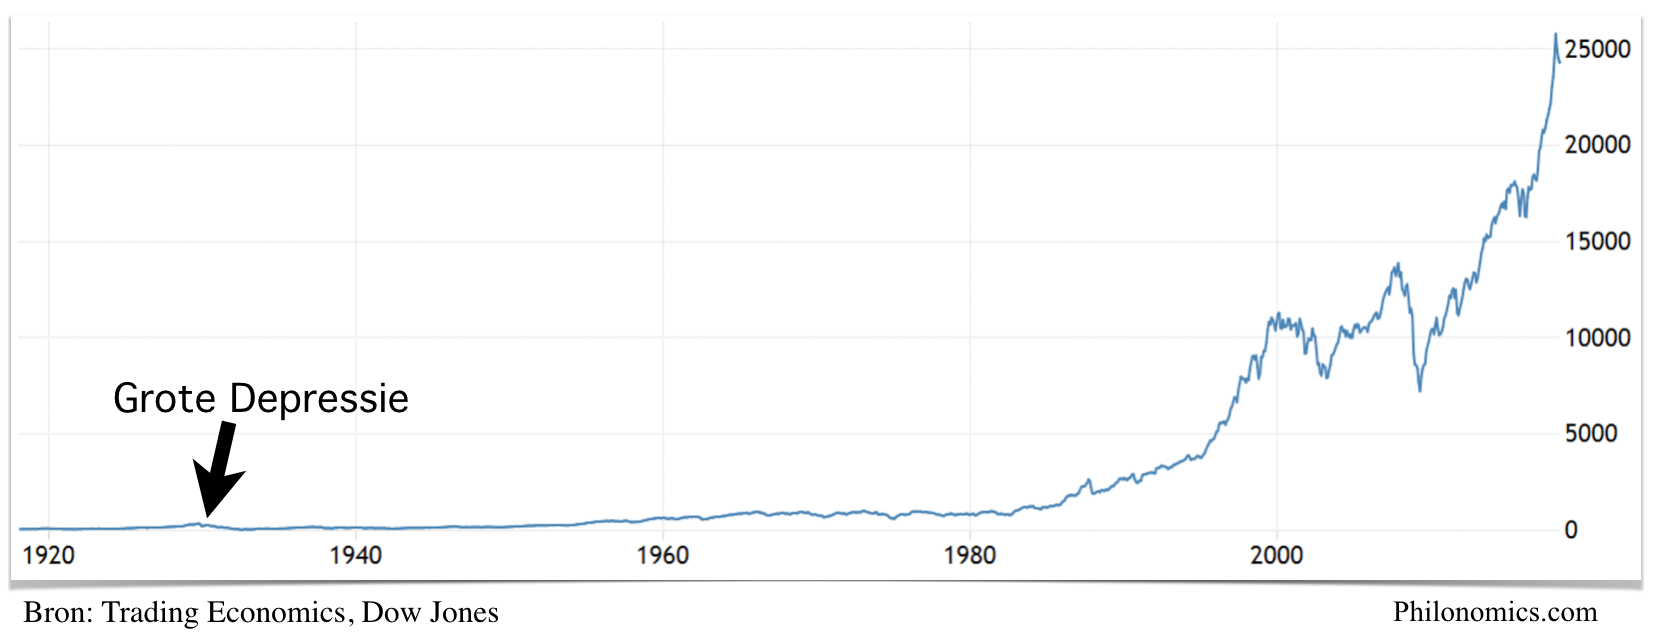 Dow Jones Industrial Average (1912-2018)